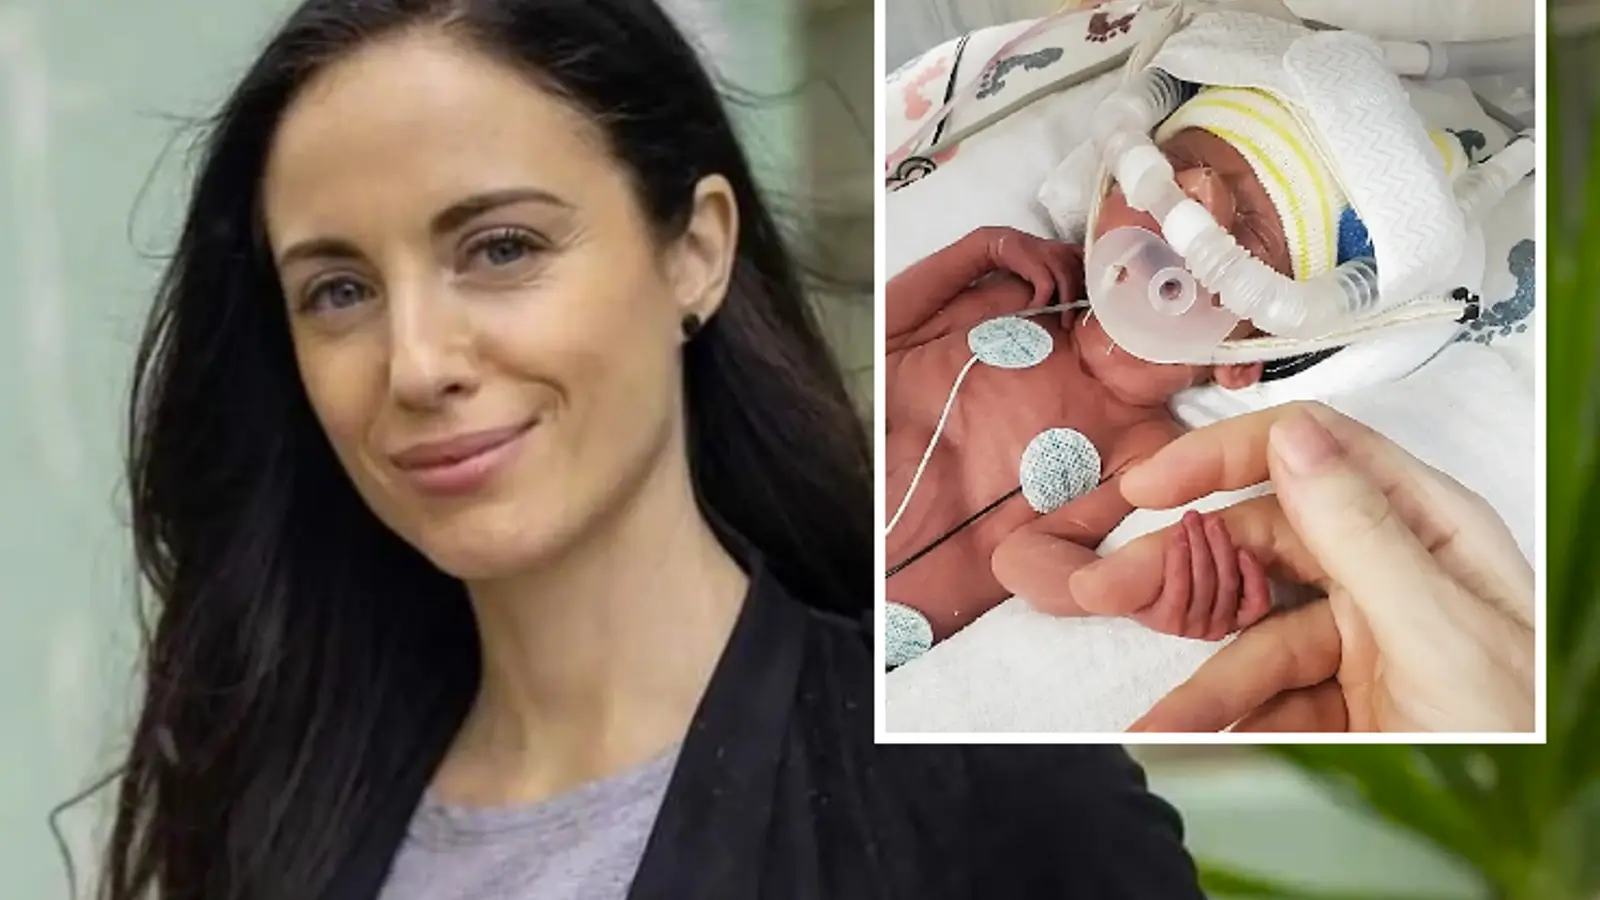 Elisabetta Fantone a vécu un cauchemar de 7 mois suite à la naissance prématurée de son fils